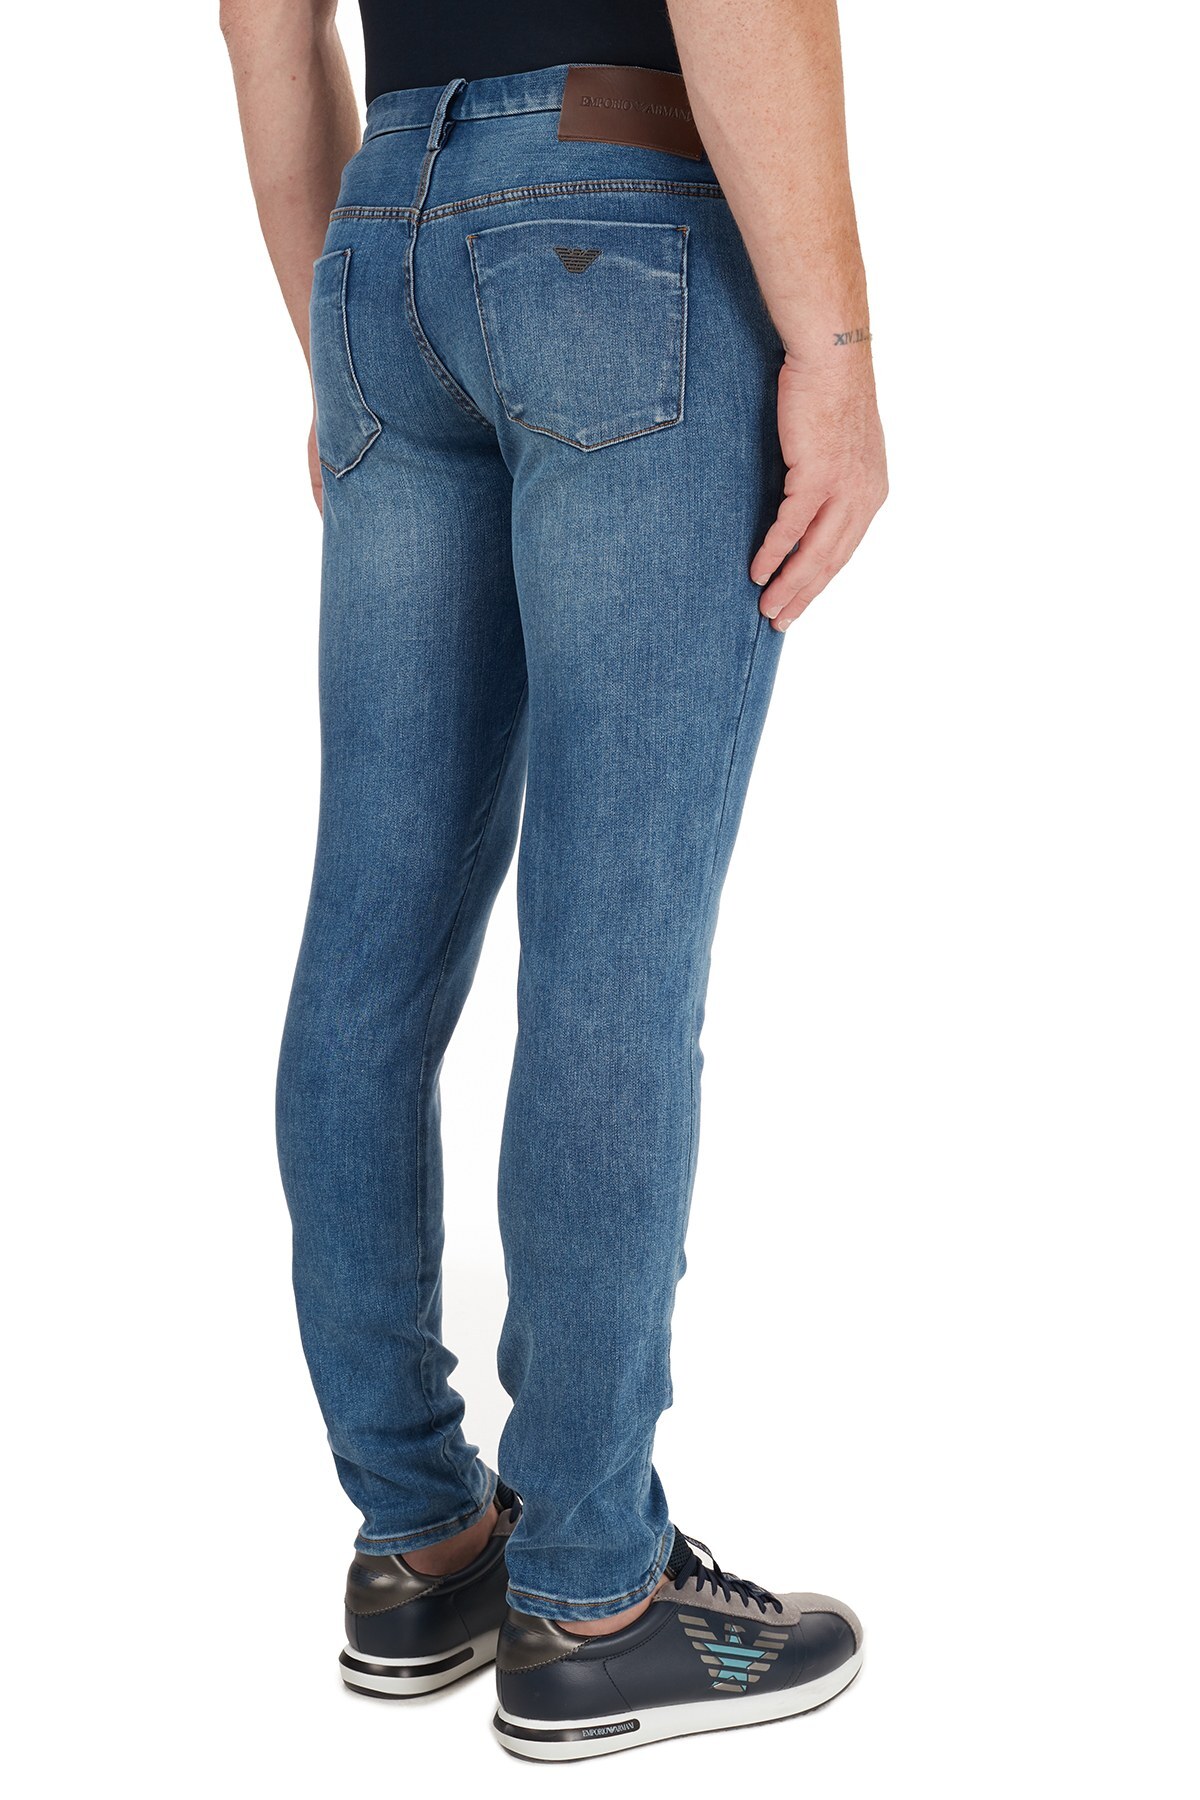 Emporio Armani J11 Jeans Erkek Kot Pantolon 6H1J11 1DPFZ 0942 LACİVERT